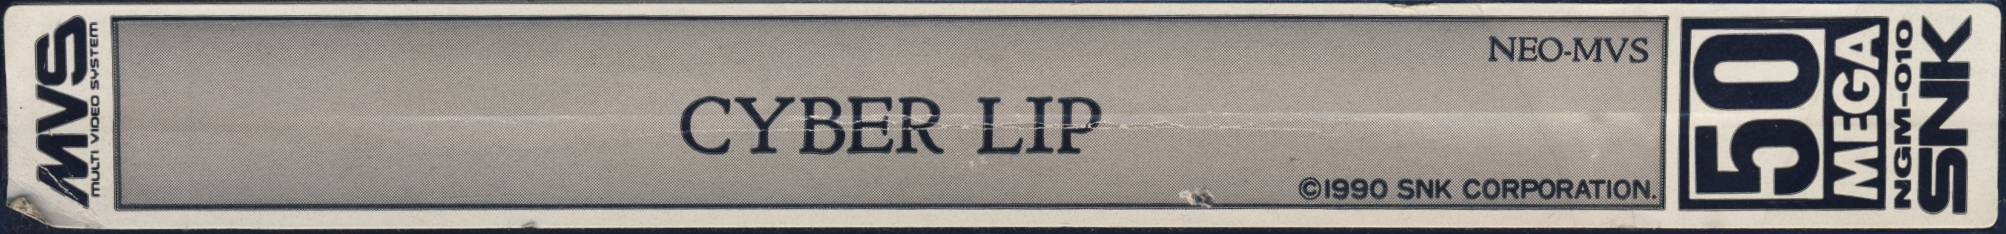 Cyber lip us label.jpg